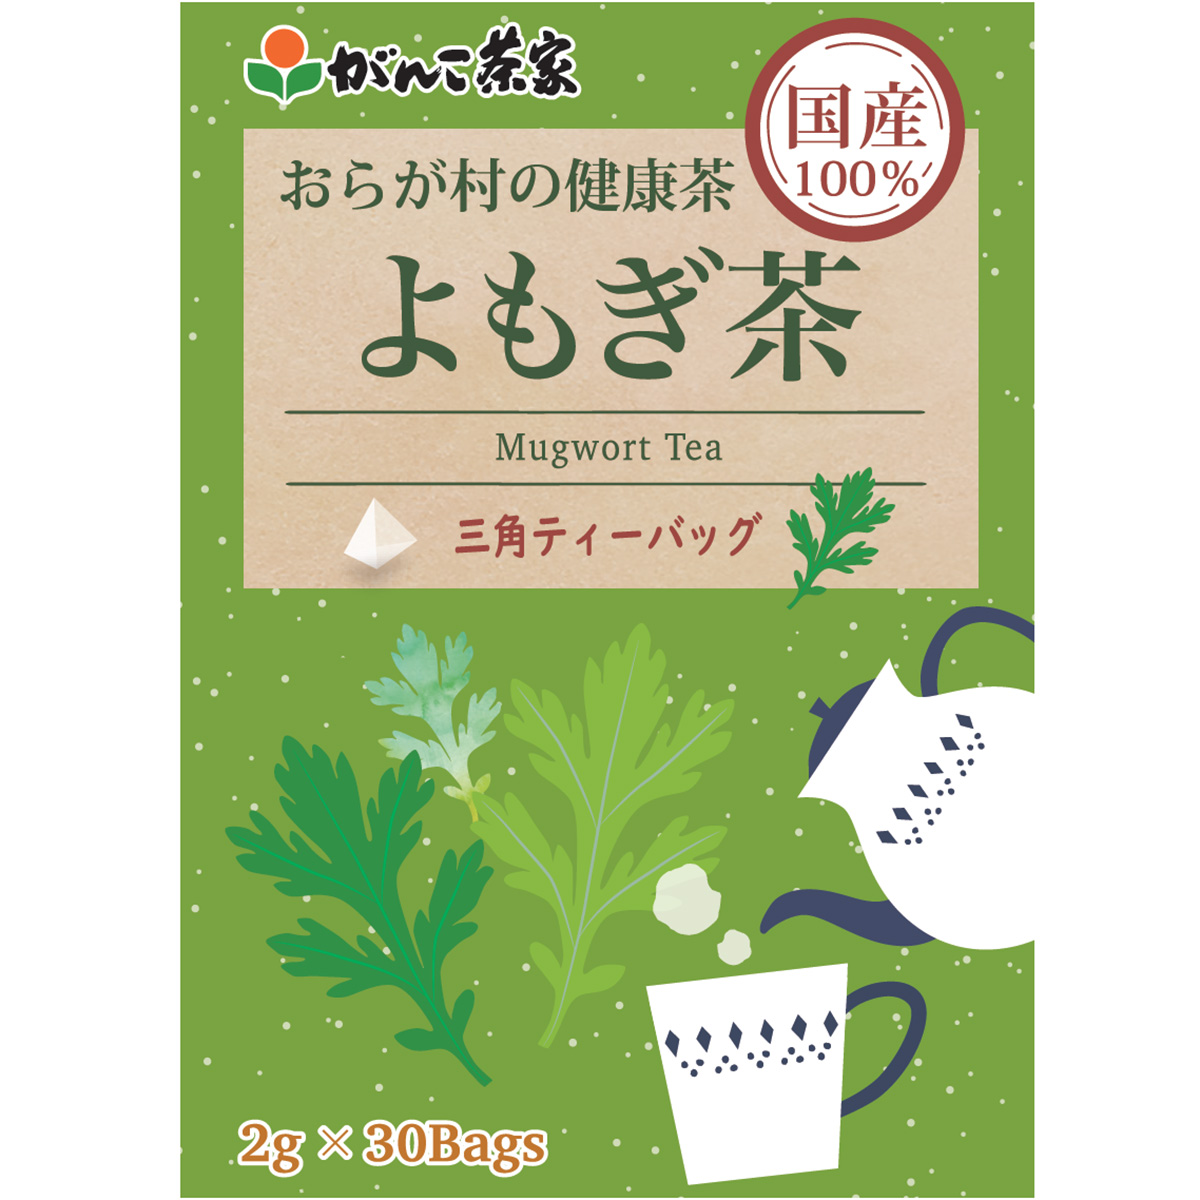 新品・送料無料 おらが村の健康茶 国産よもぎ茶(3g*24袋入) - 酒